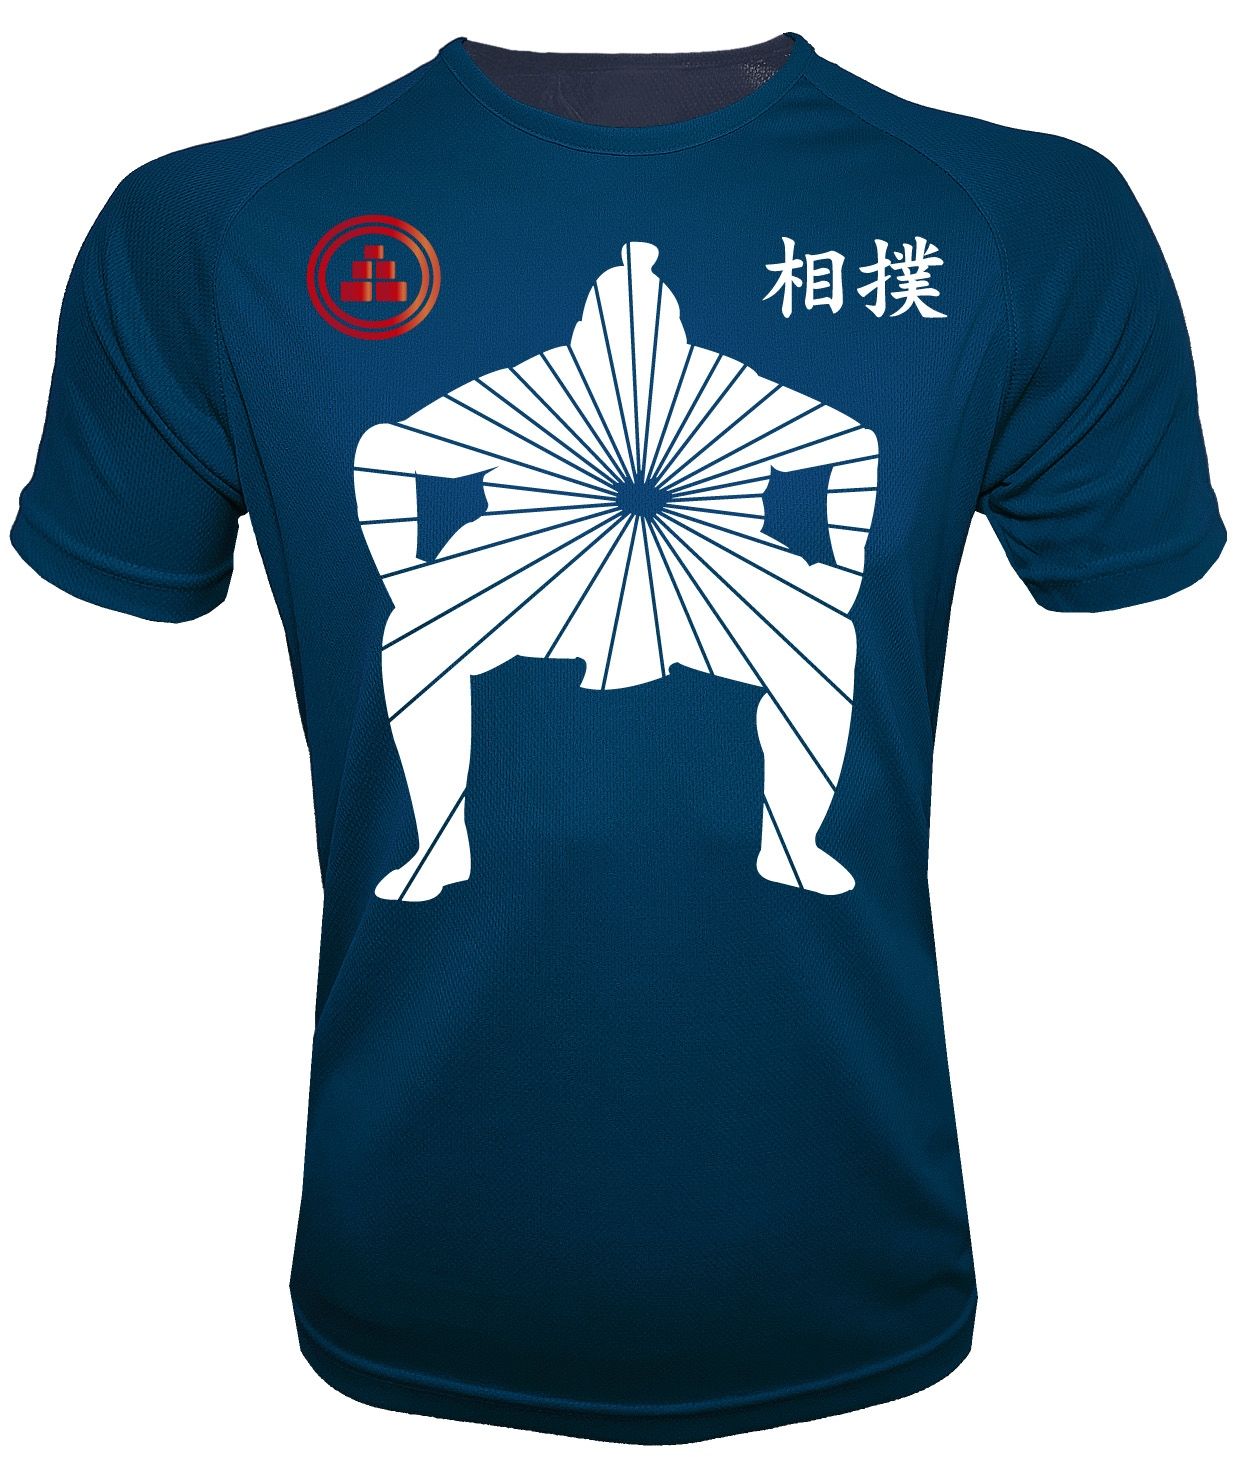 Camiseta de deporte Sumo AM